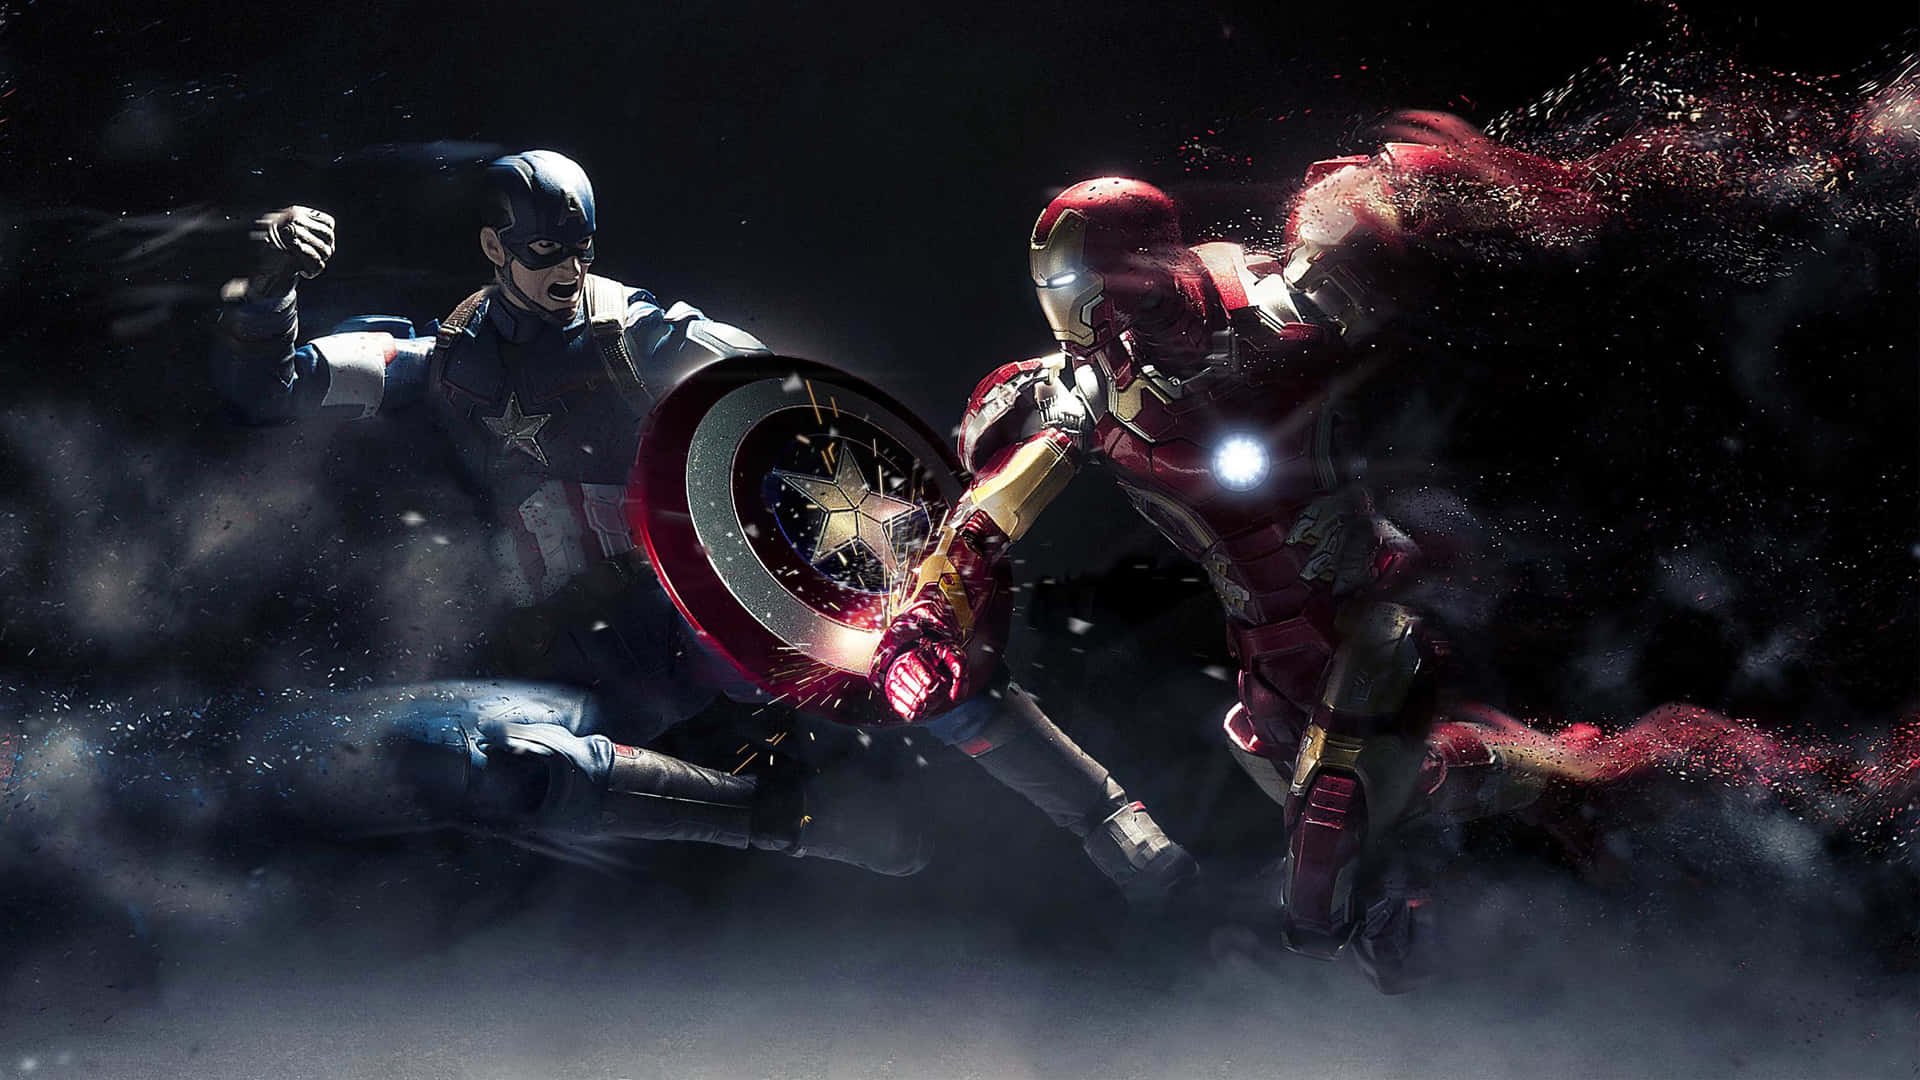 Sumérgeteen El Mundo De Marvel Este Fin De Semana Con El Capitán América. Fondo de pantalla